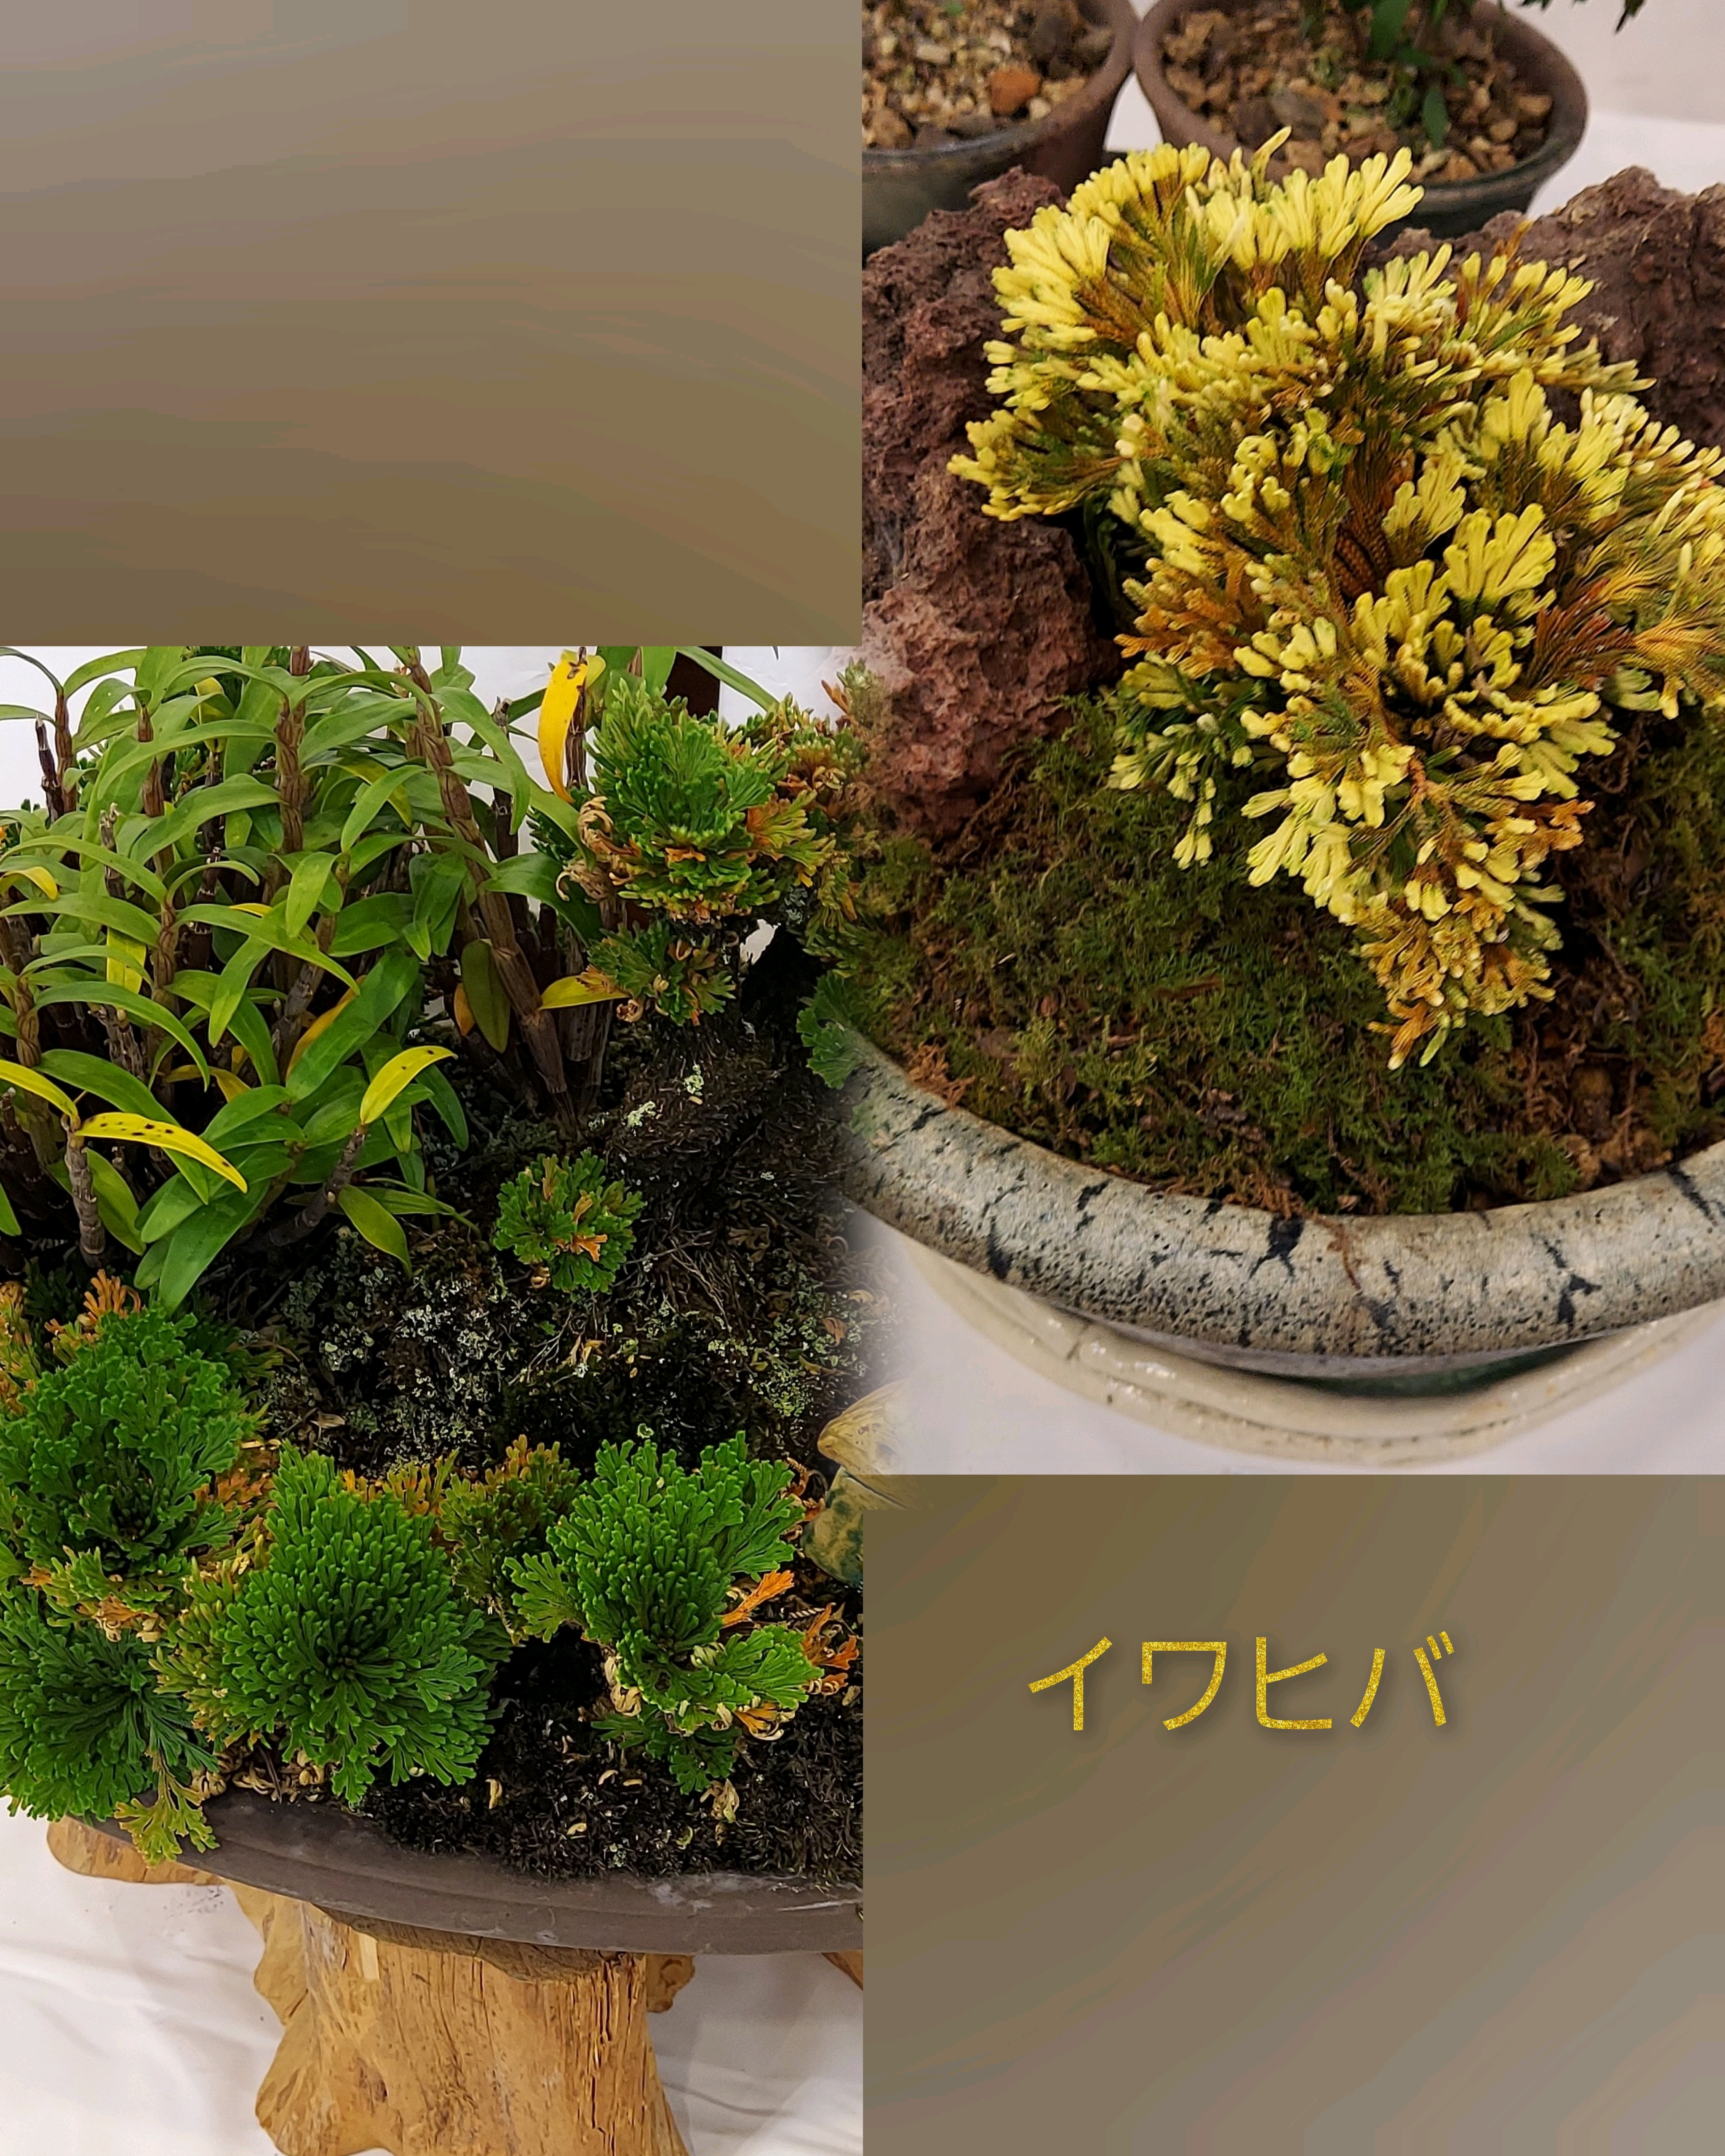 岩松イワヒバ高山植物盆栽2 - 植物/観葉植物